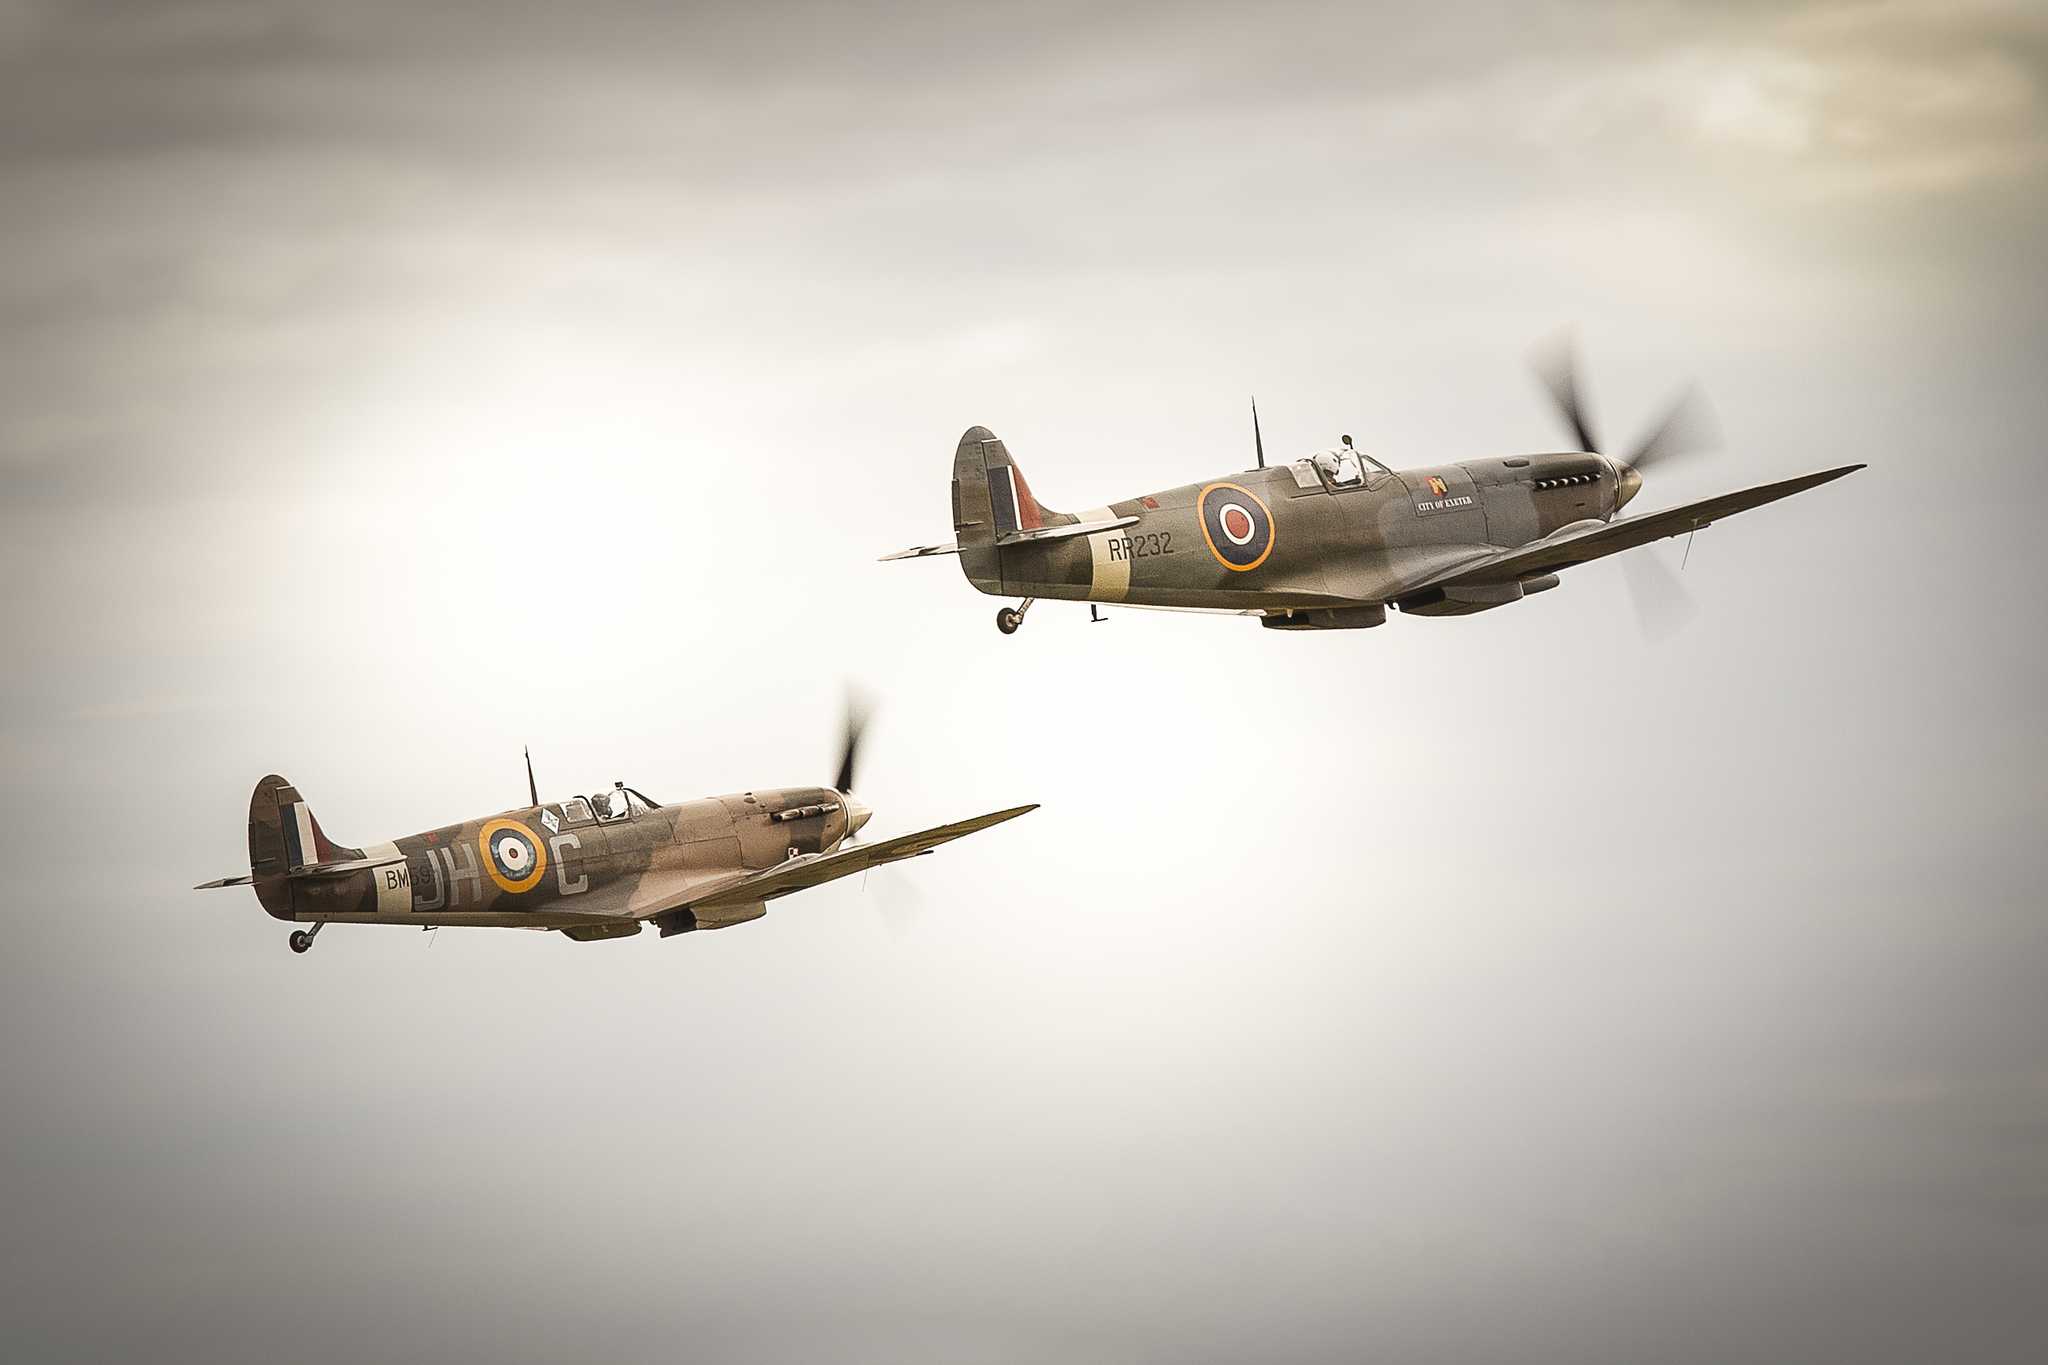 Spitfires in flight